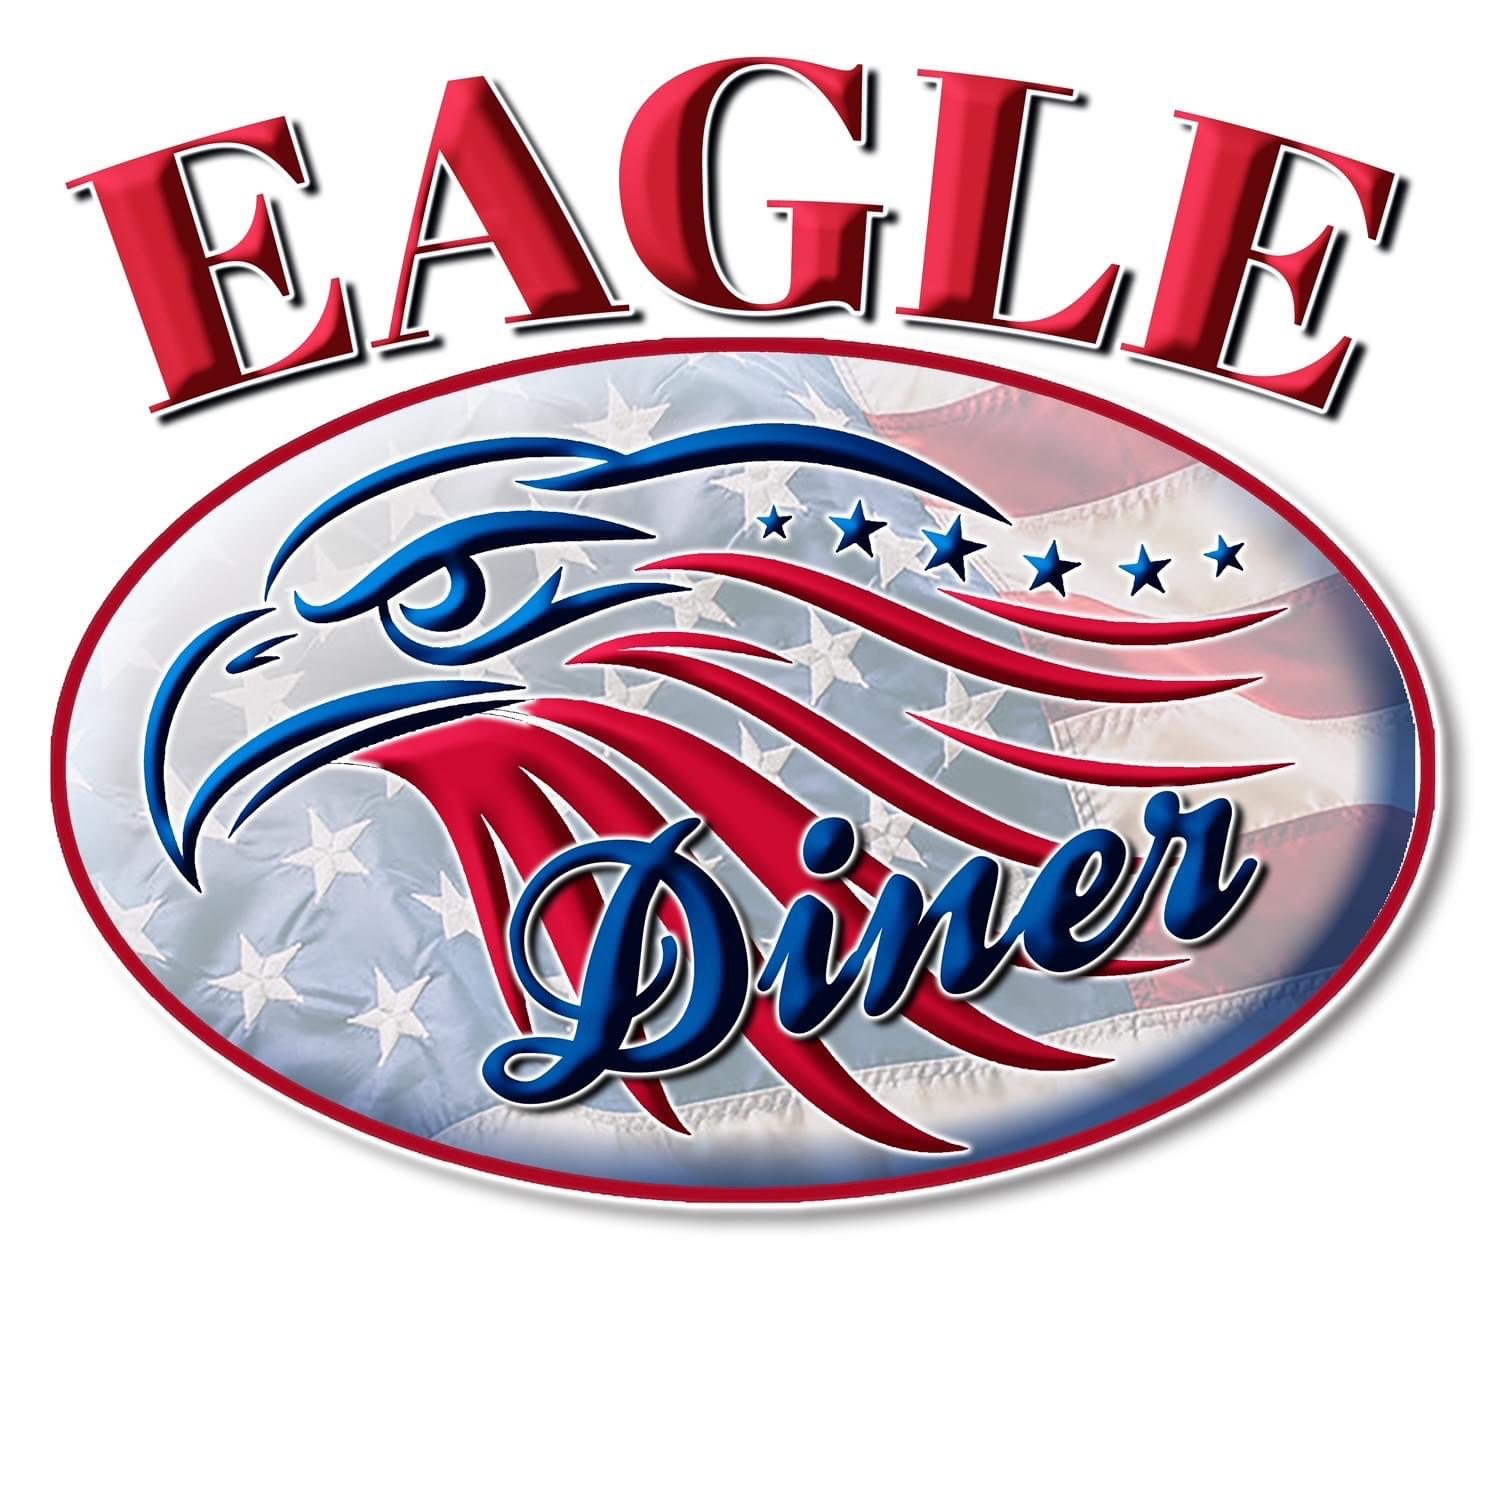 Eagle Diner.JPG